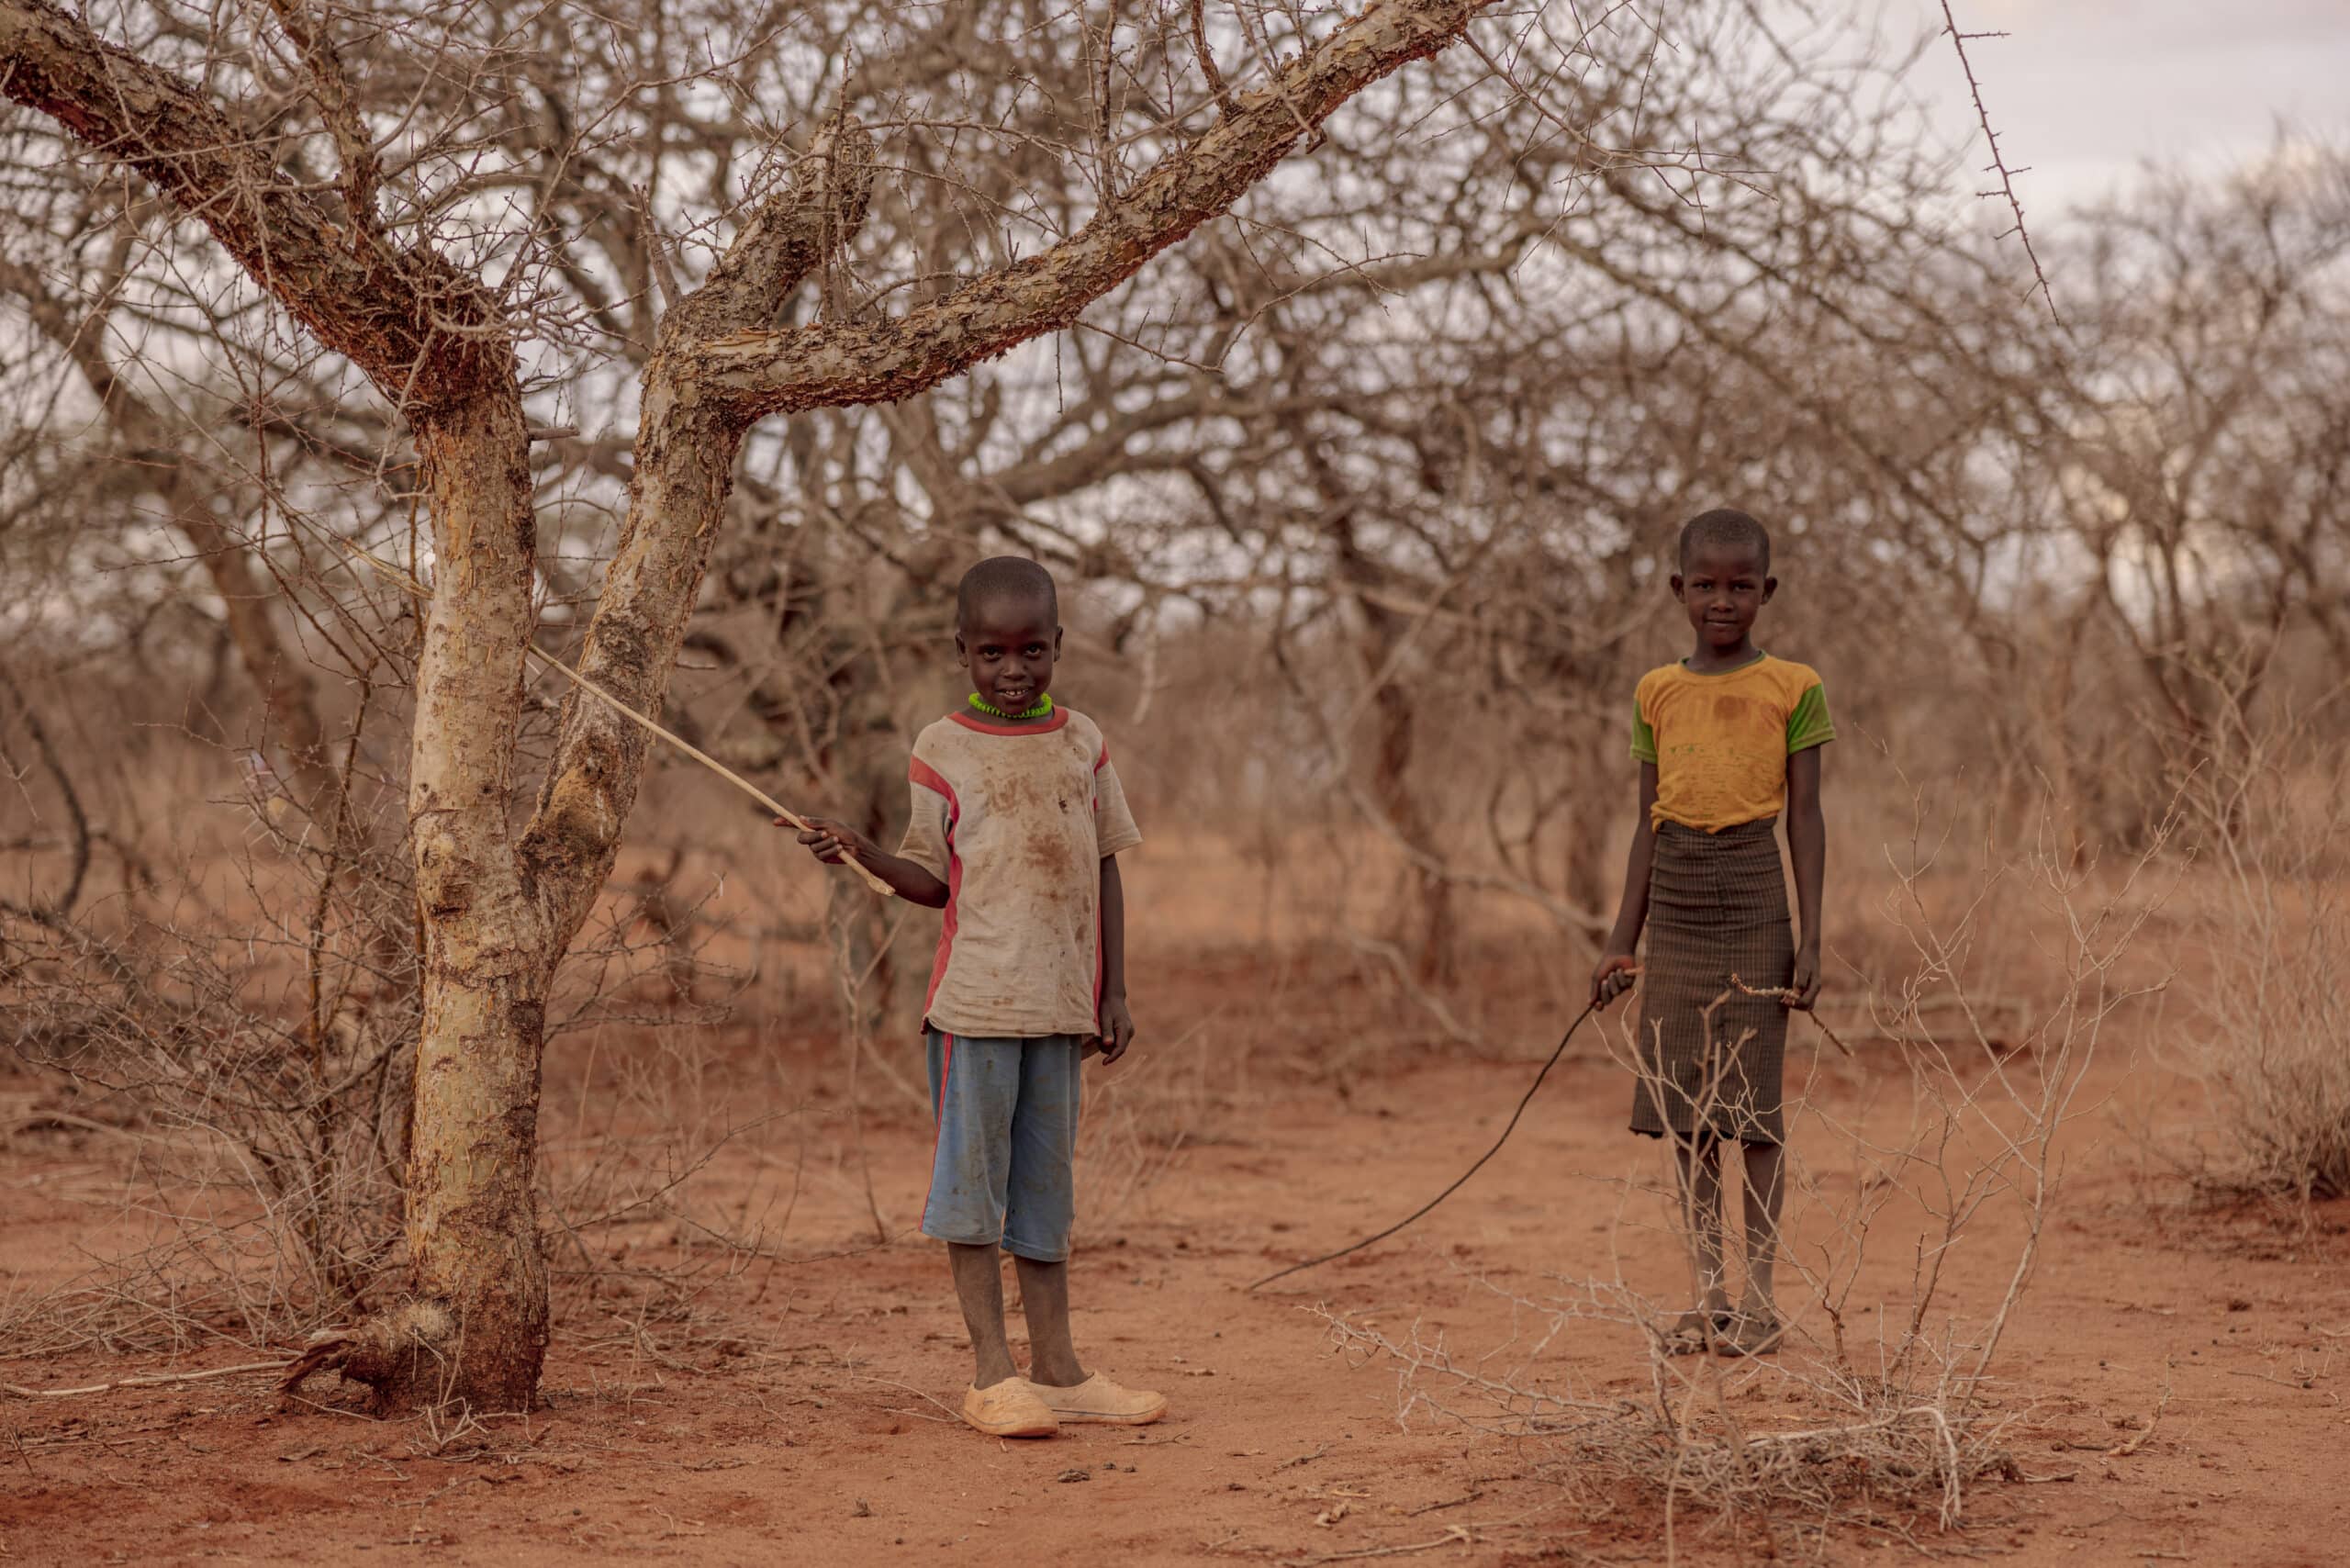 Zwei kleine Jungen stehen in einer trockenen, kargen Landschaft mit dünnen Bäumen und halten schmale Stöcke. Das Kind links trägt ein weiß-rotes Hemd, das rechte ein gelb-schwarzes Hemd. © Fotografie Tomas Rodriguez